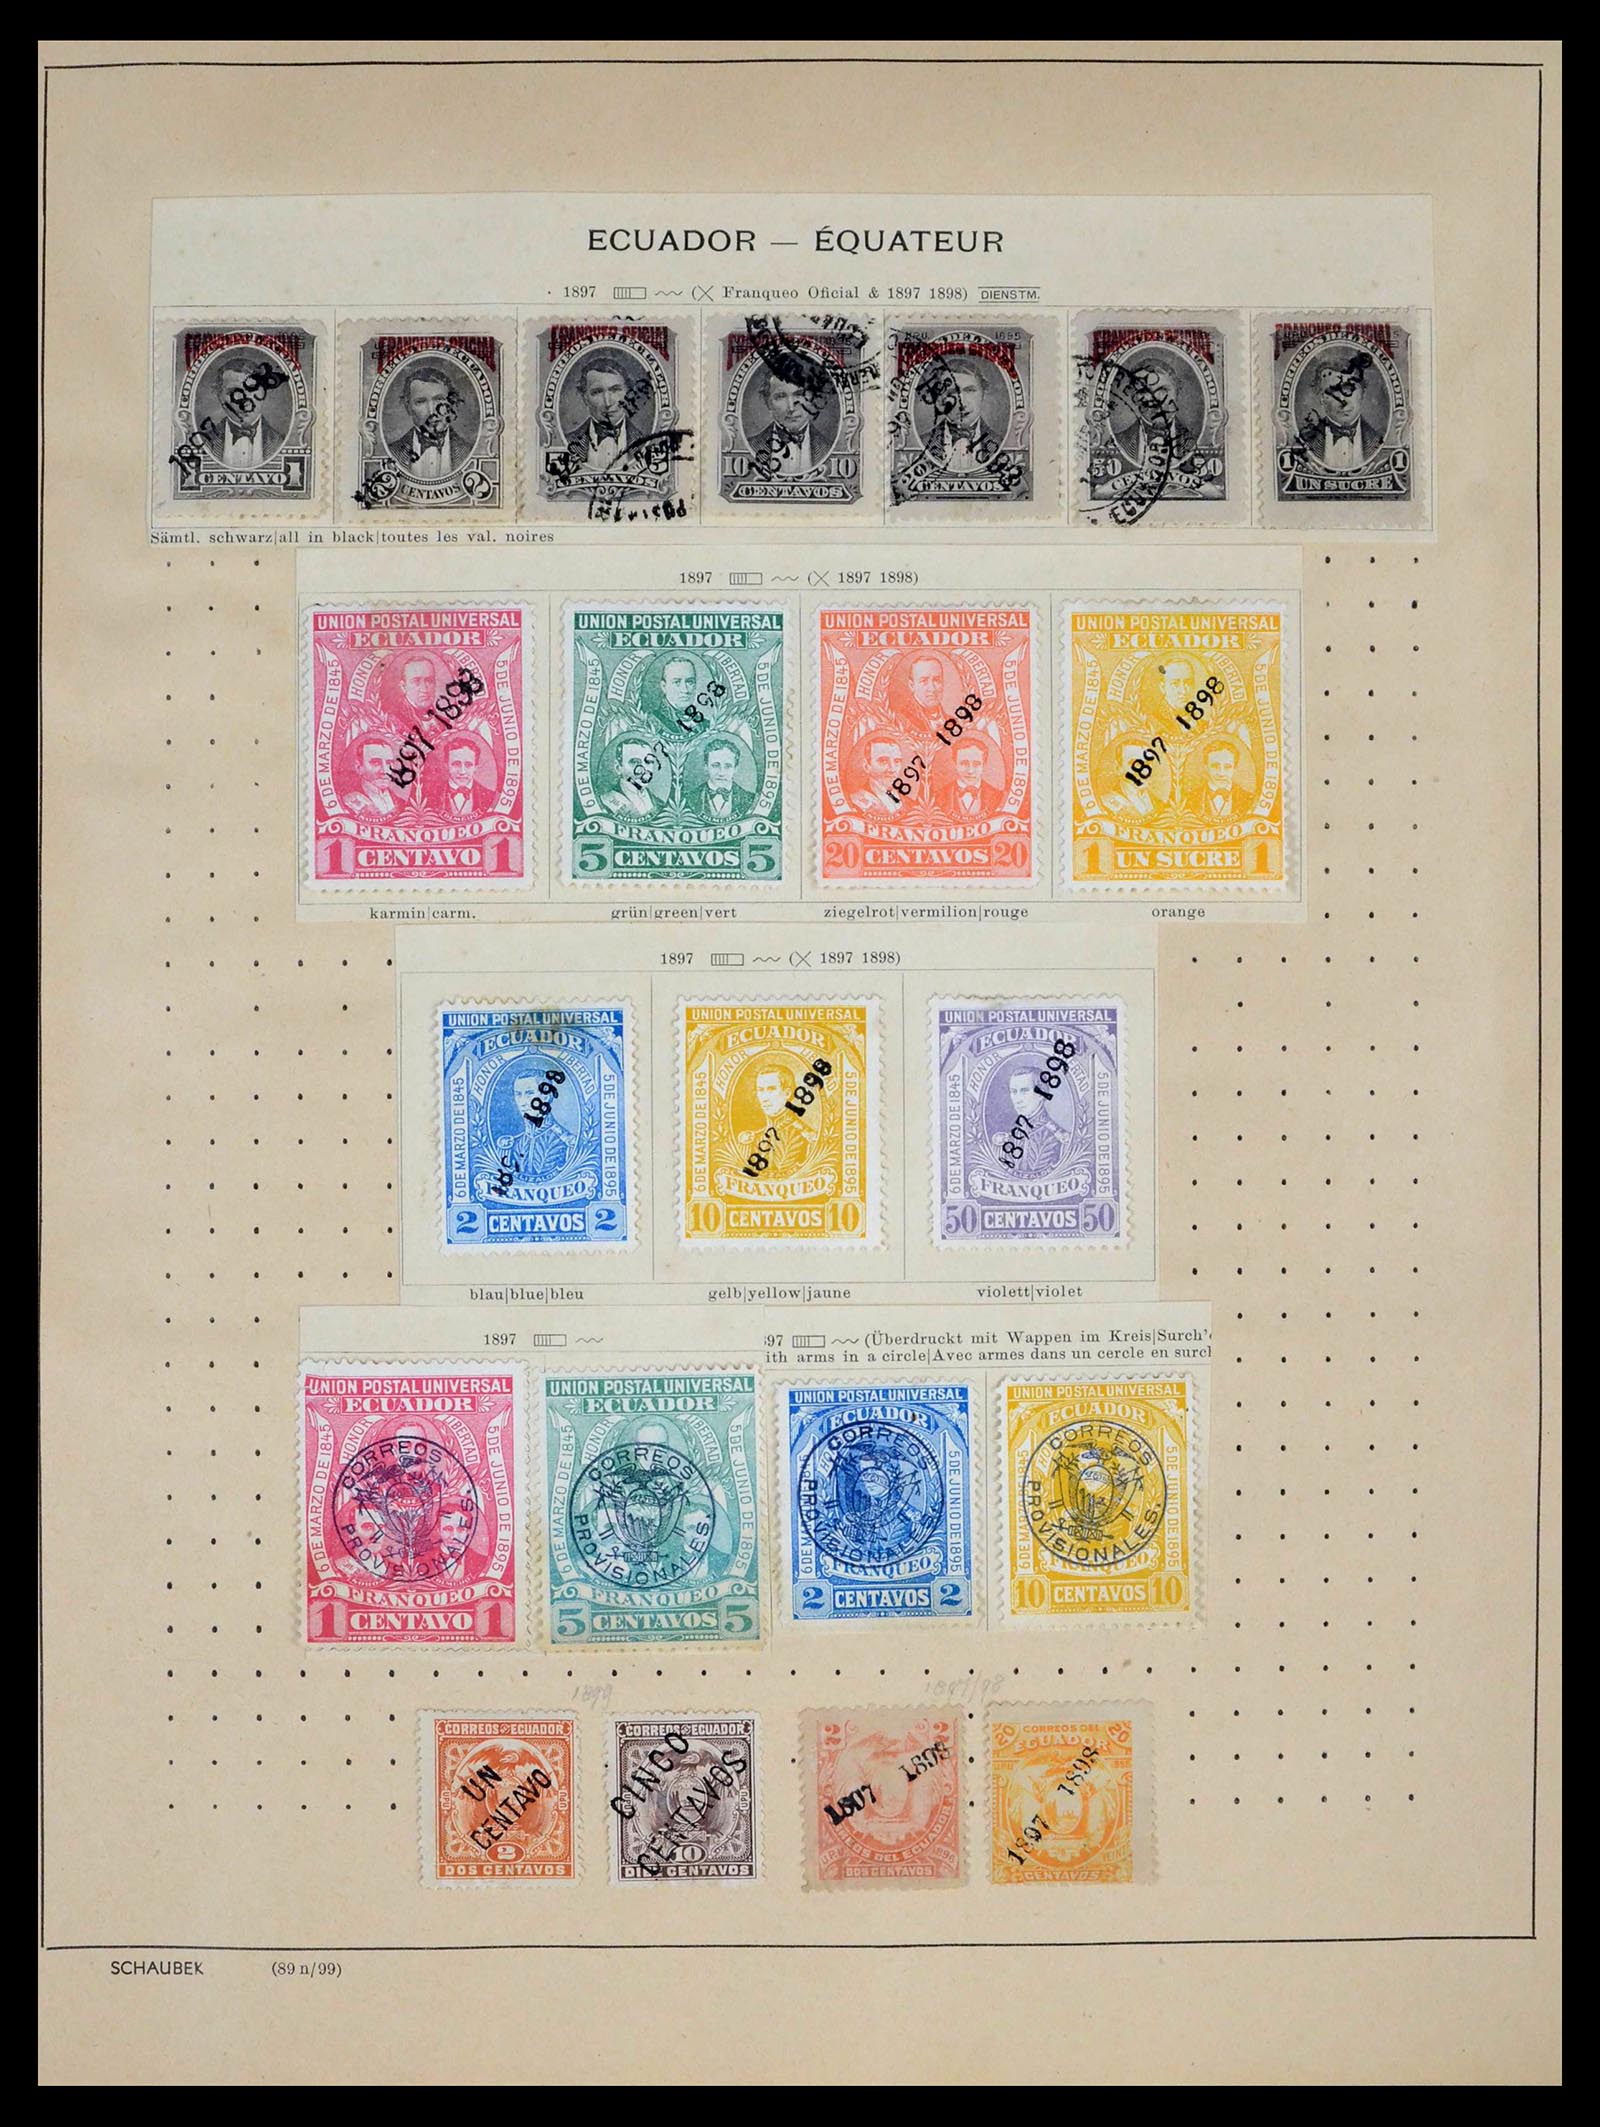 39456 0033 - Stamp collection 39456 Ecuador 1865-1960.